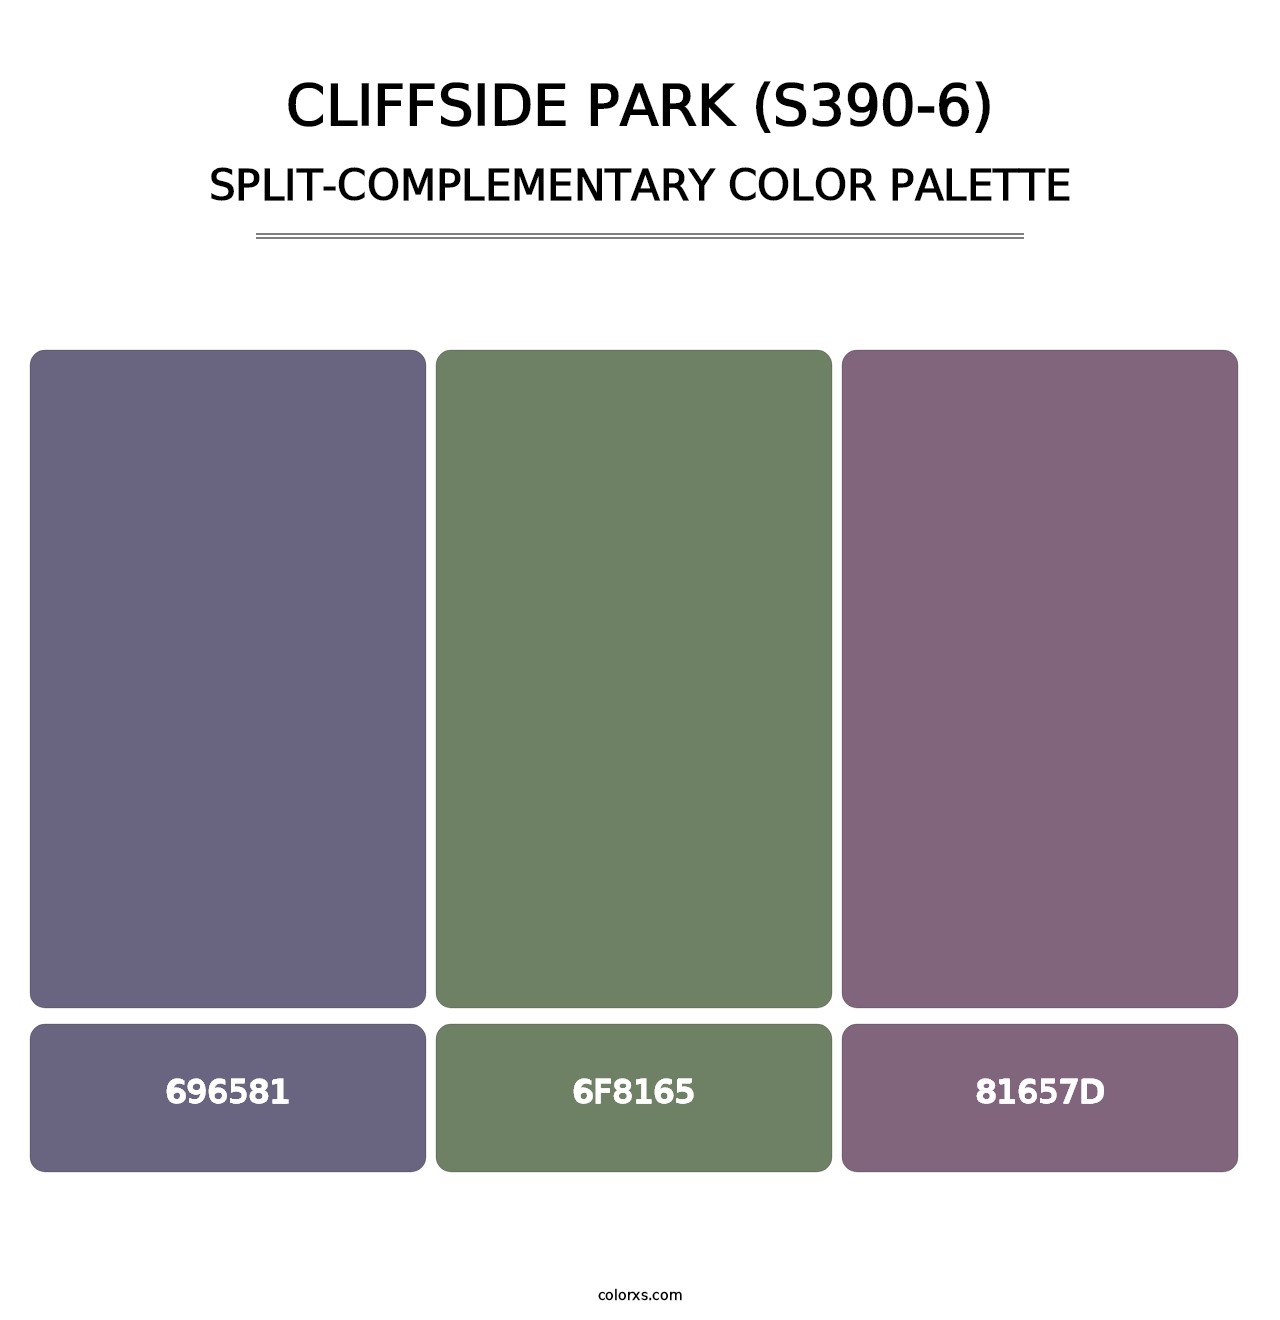 Cliffside Park (S390-6) - Split-Complementary Color Palette